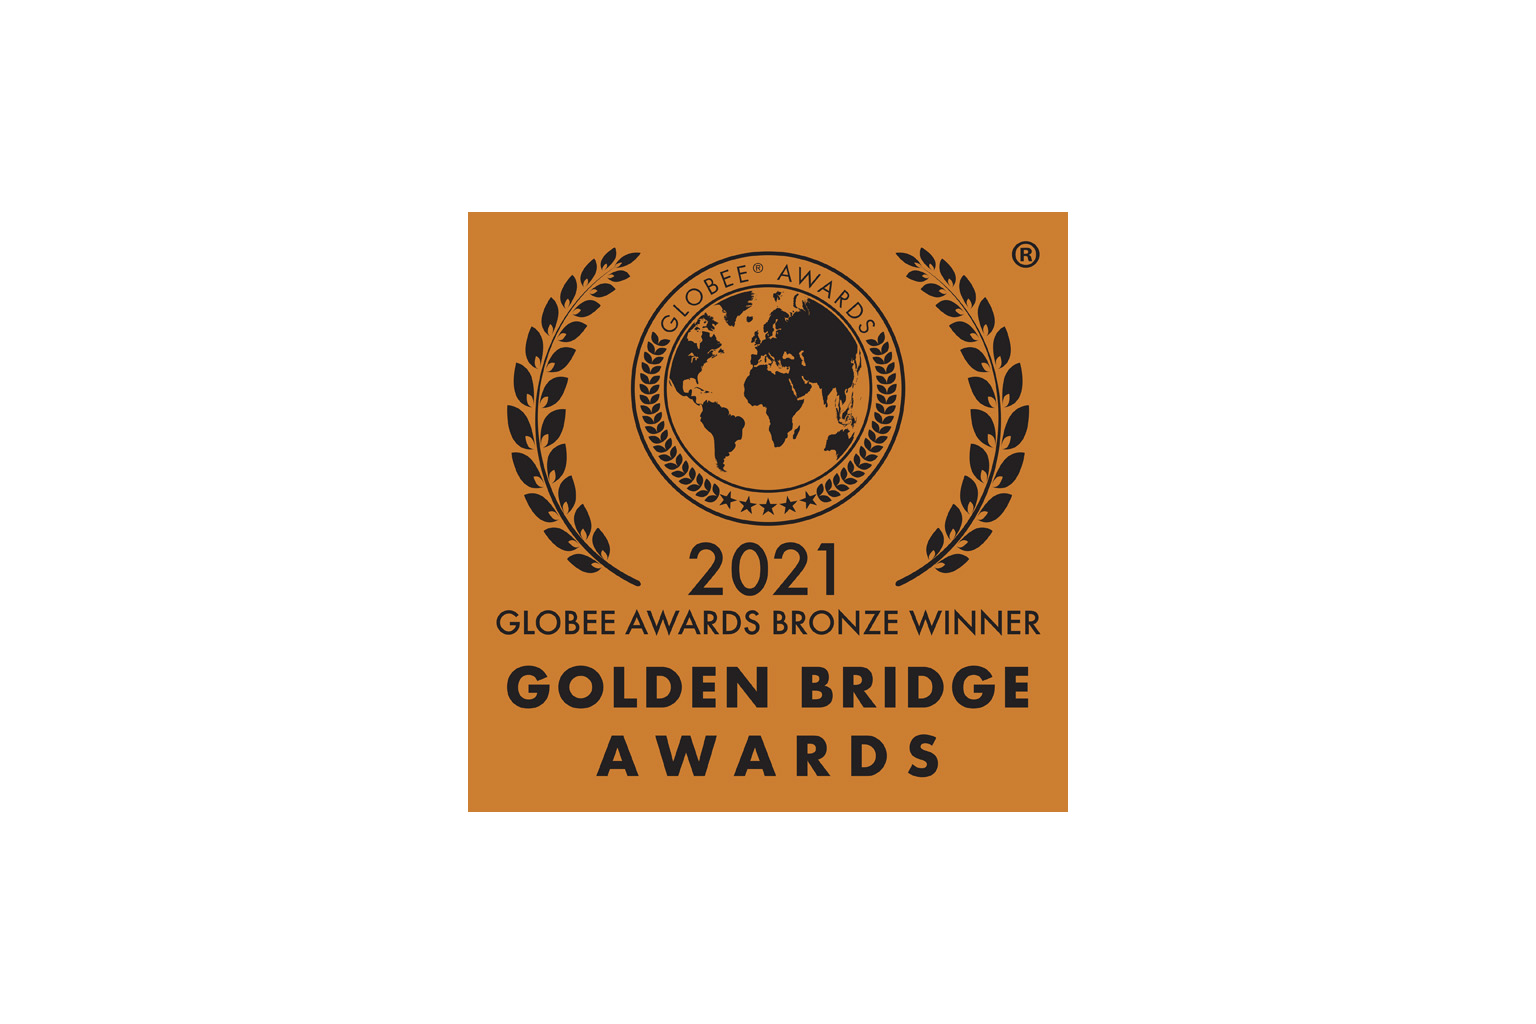 Golden Bridge Award Bronze